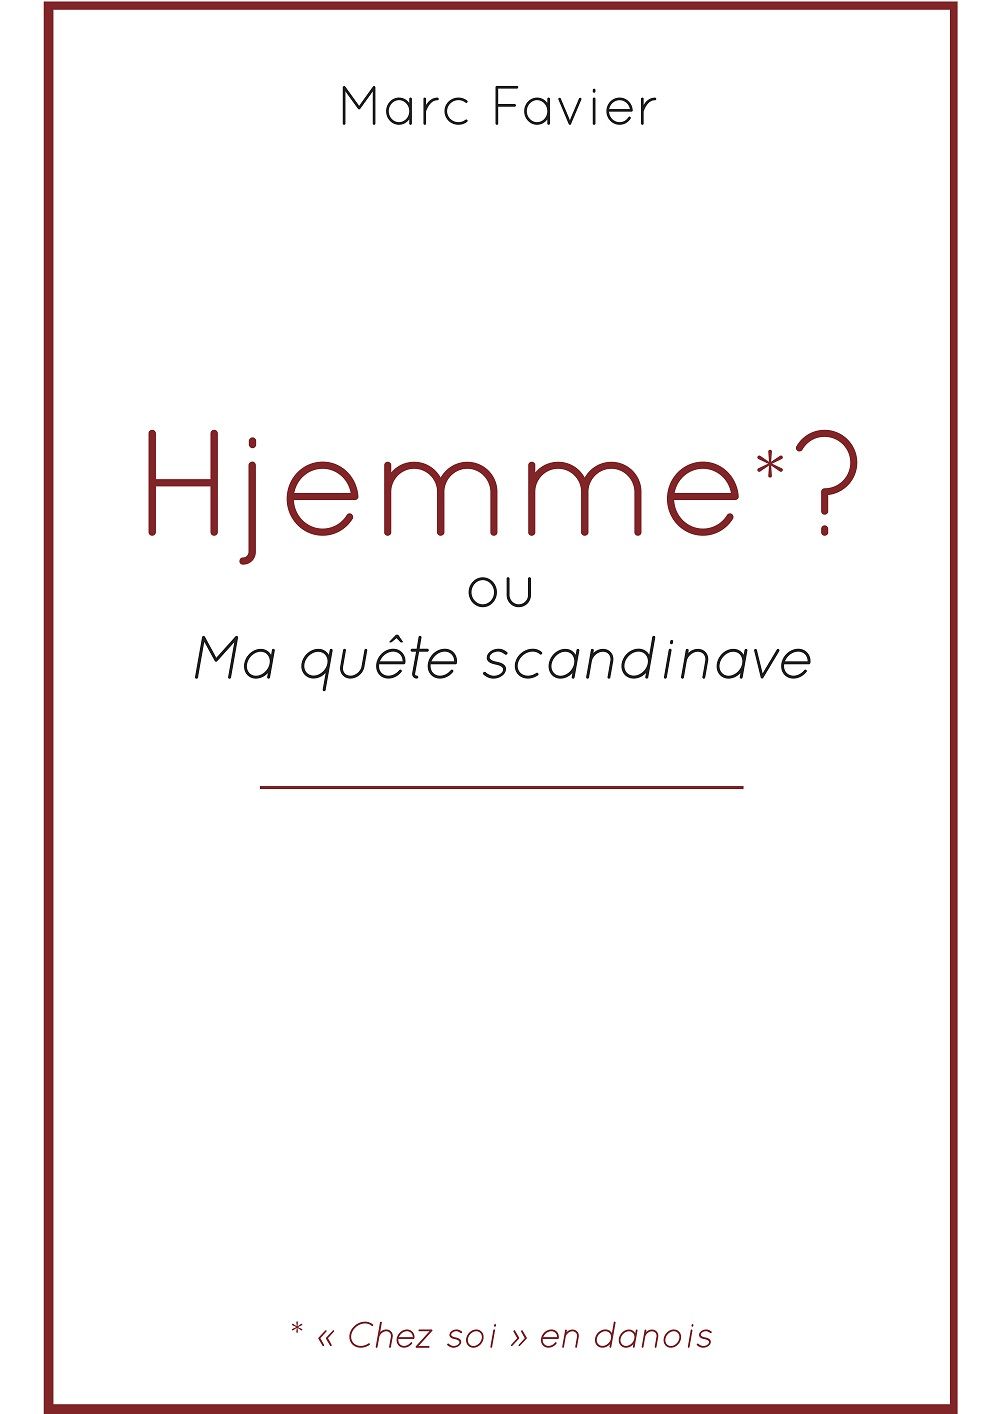 Samedi 8 février de 10h à 12h - Rencontre dédicace avec Marc Favier autour de son roman Hjemme.